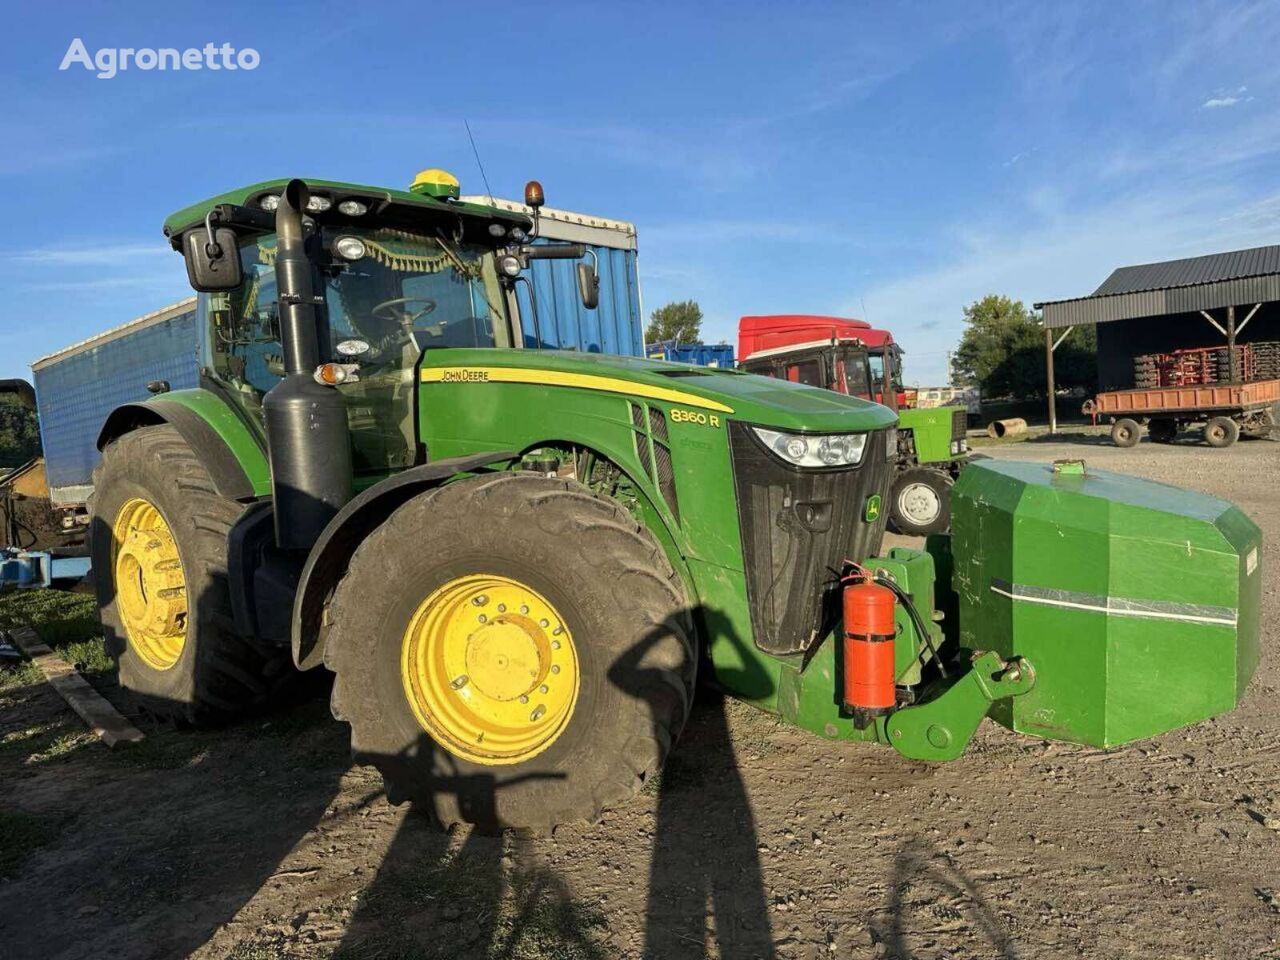 John Deere 8360 R traktor på hjul